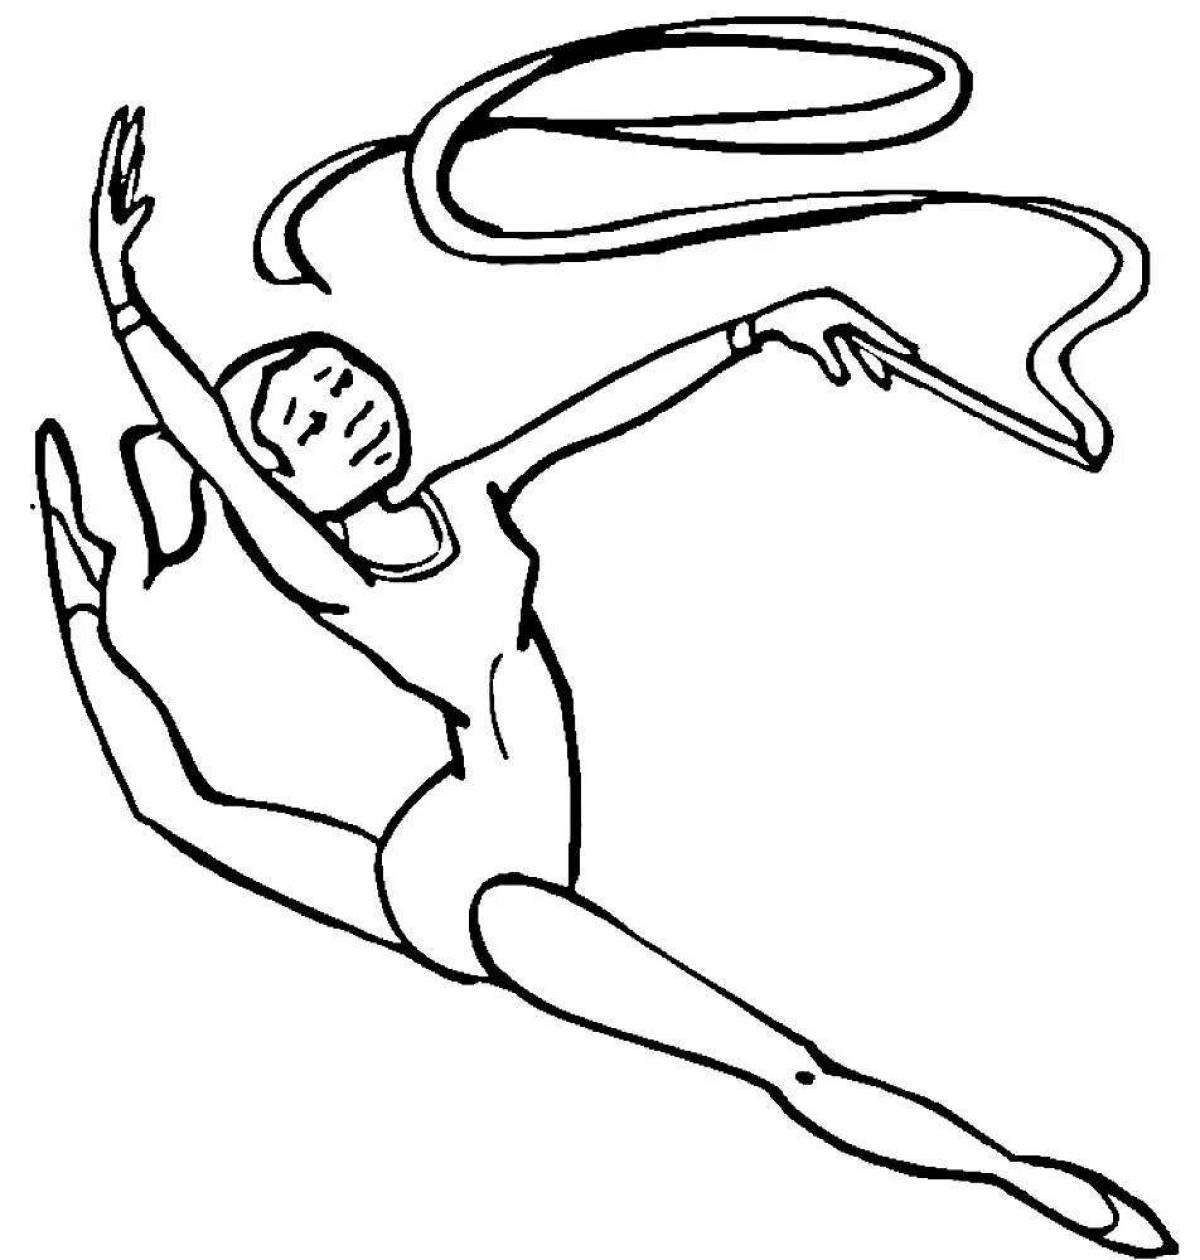 Flexible gymnast coloring page